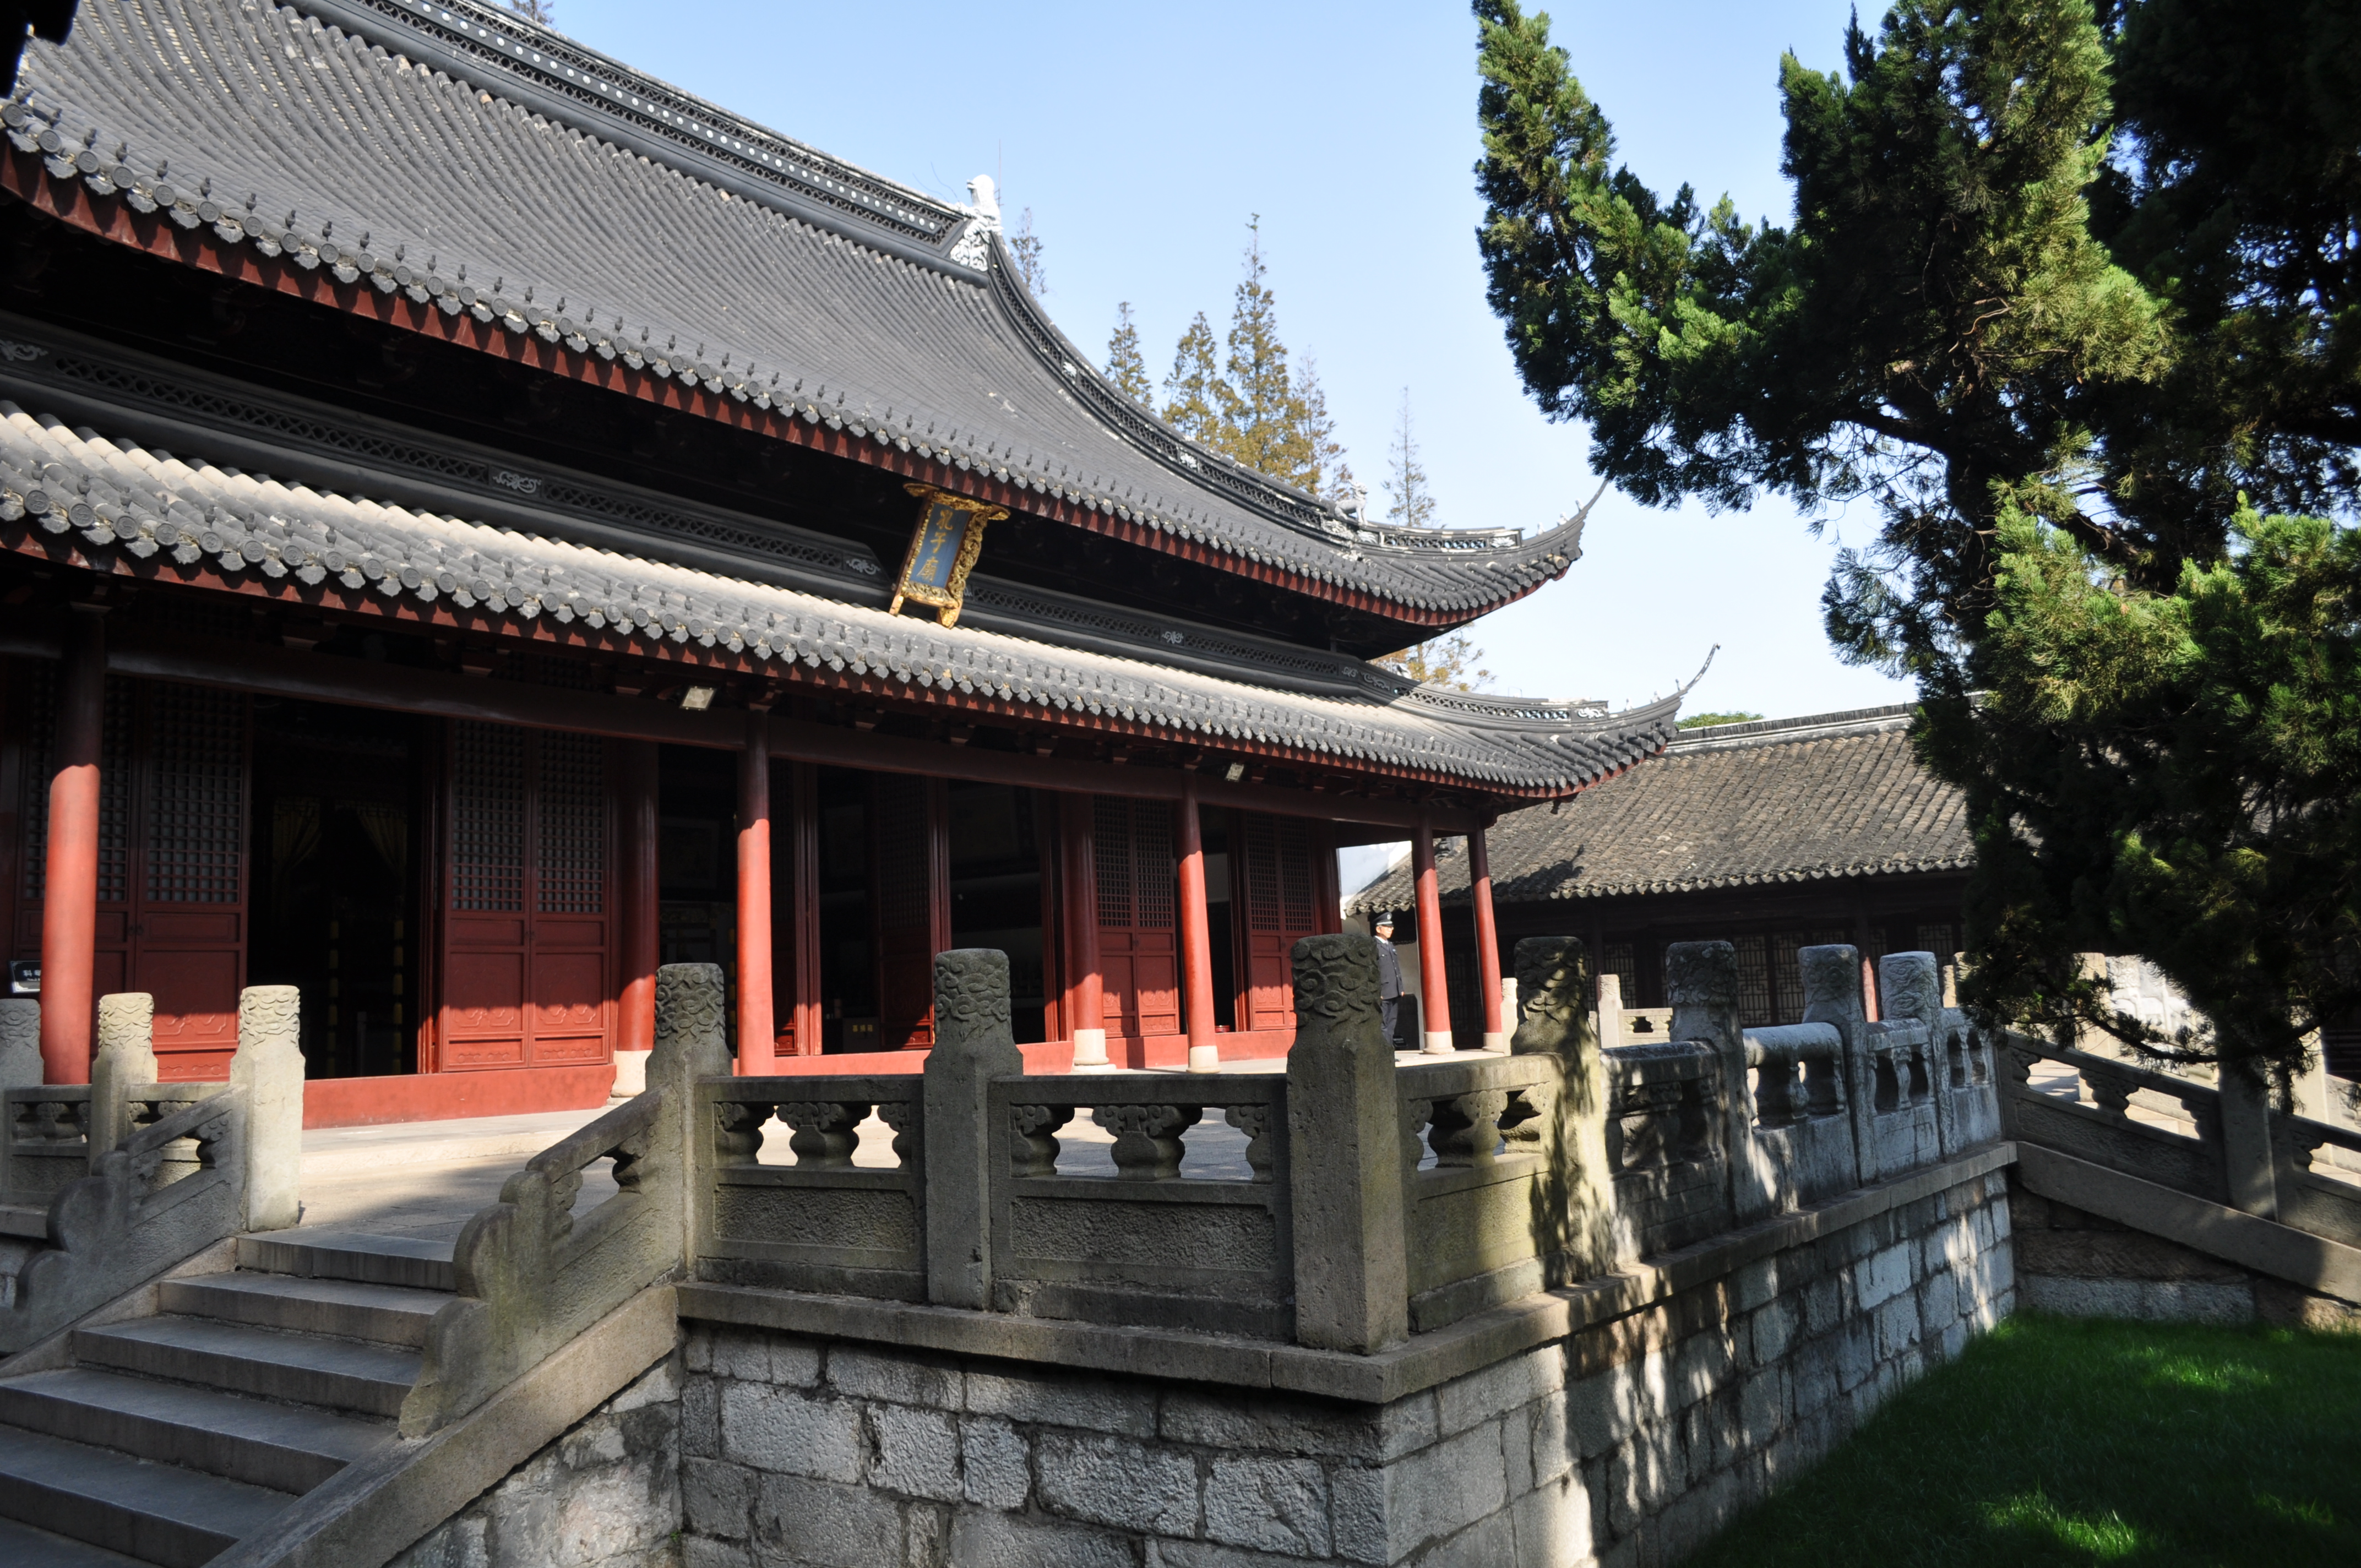 上海嘉定寺庙图片